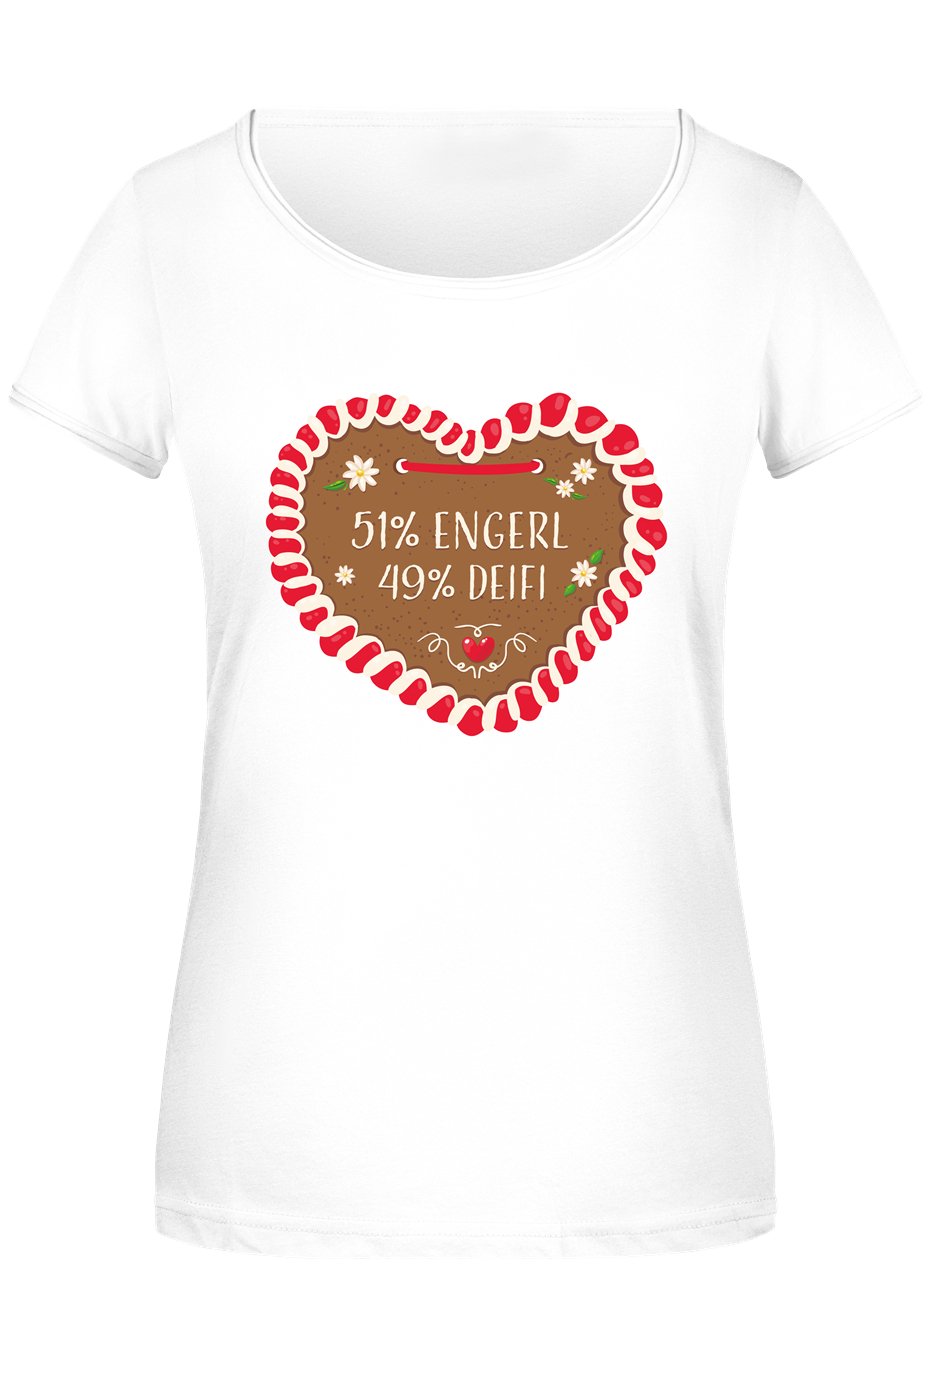 Bild: T-Shirt Damen - 51% Engerl 49% Deifi (Lebkuchenherz) Geschenkidee